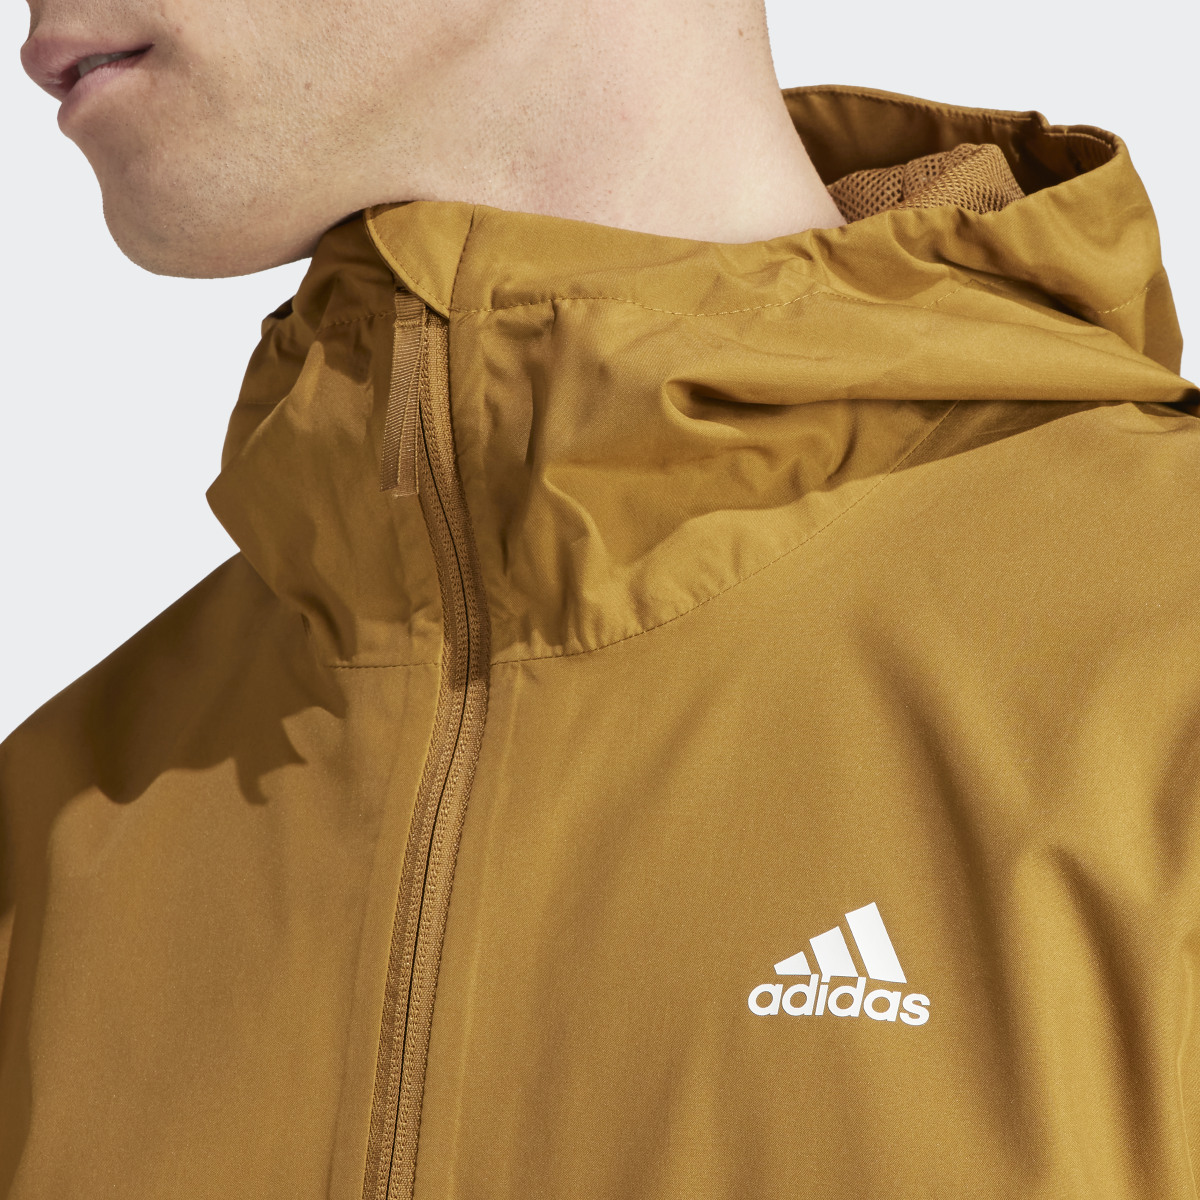 Adidas Essentials RAIN.RDY Jacket. 7